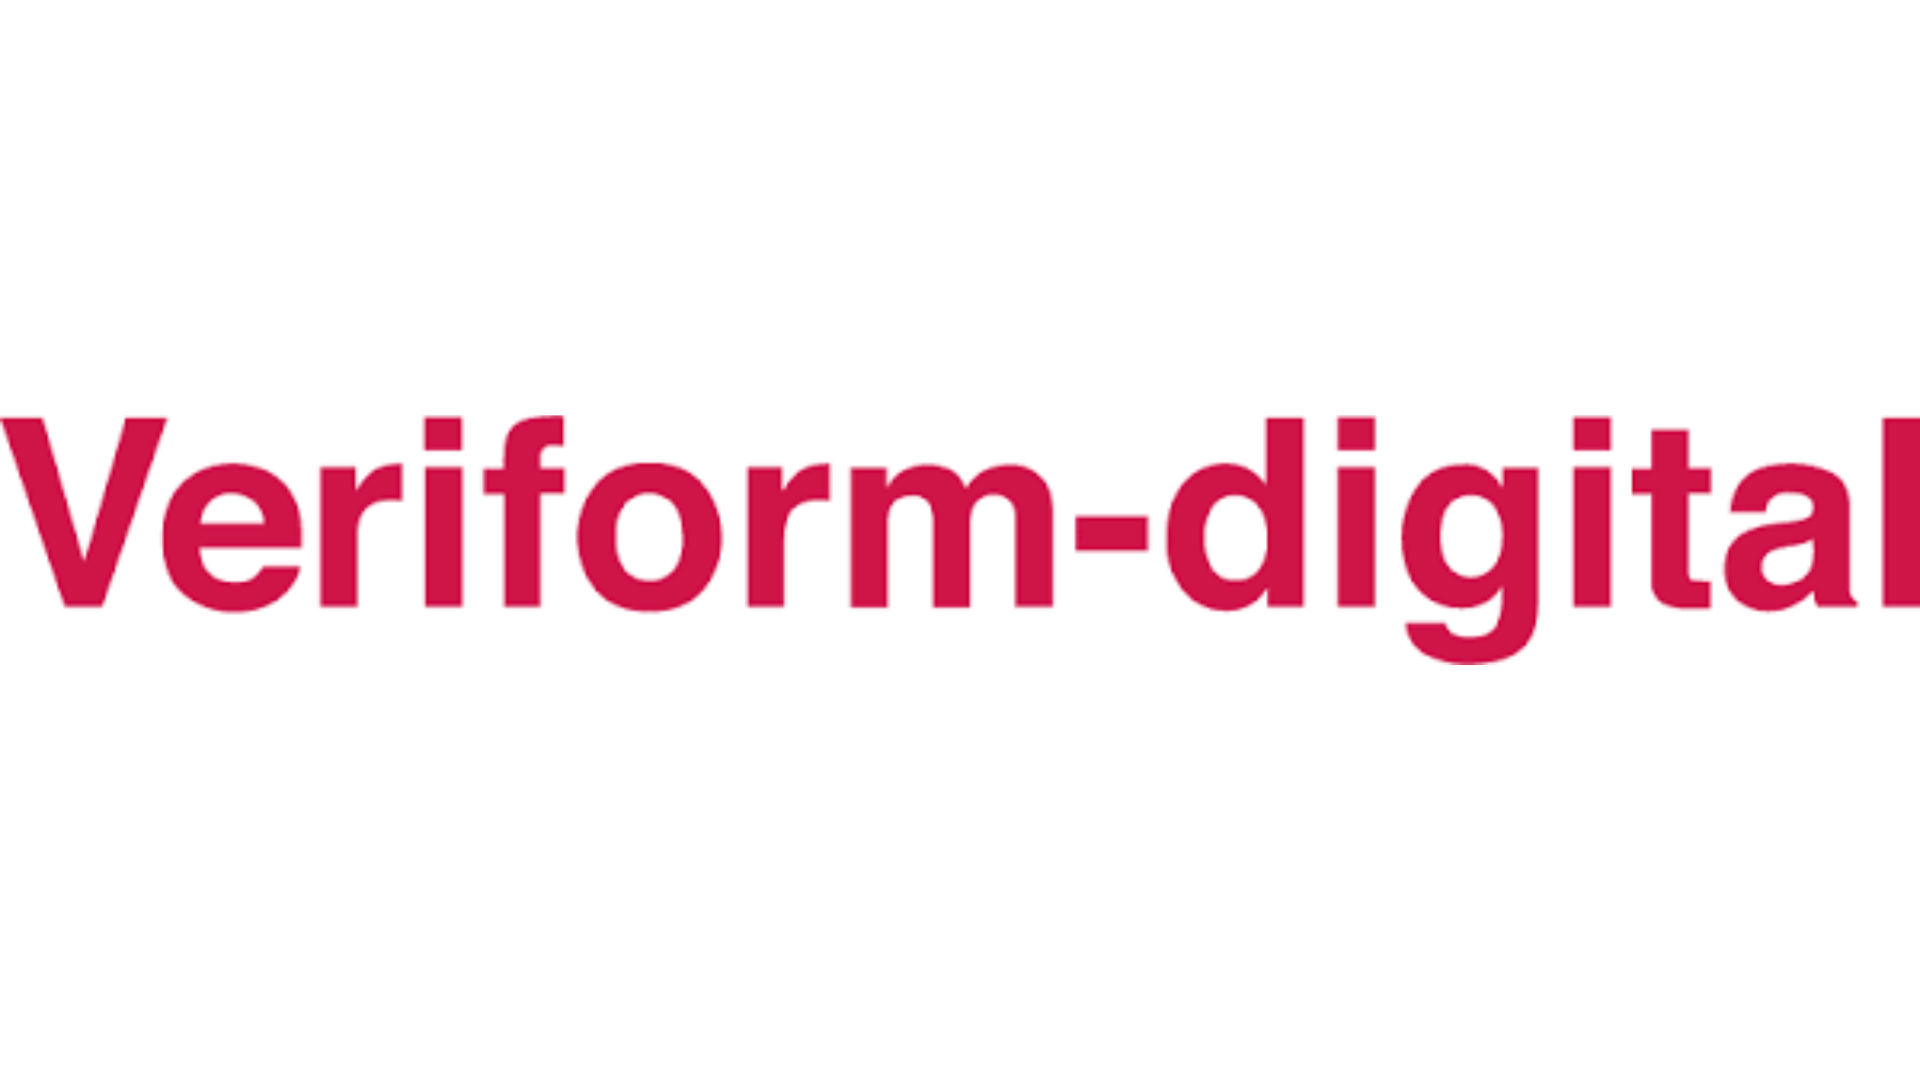 Veriform Digital logo